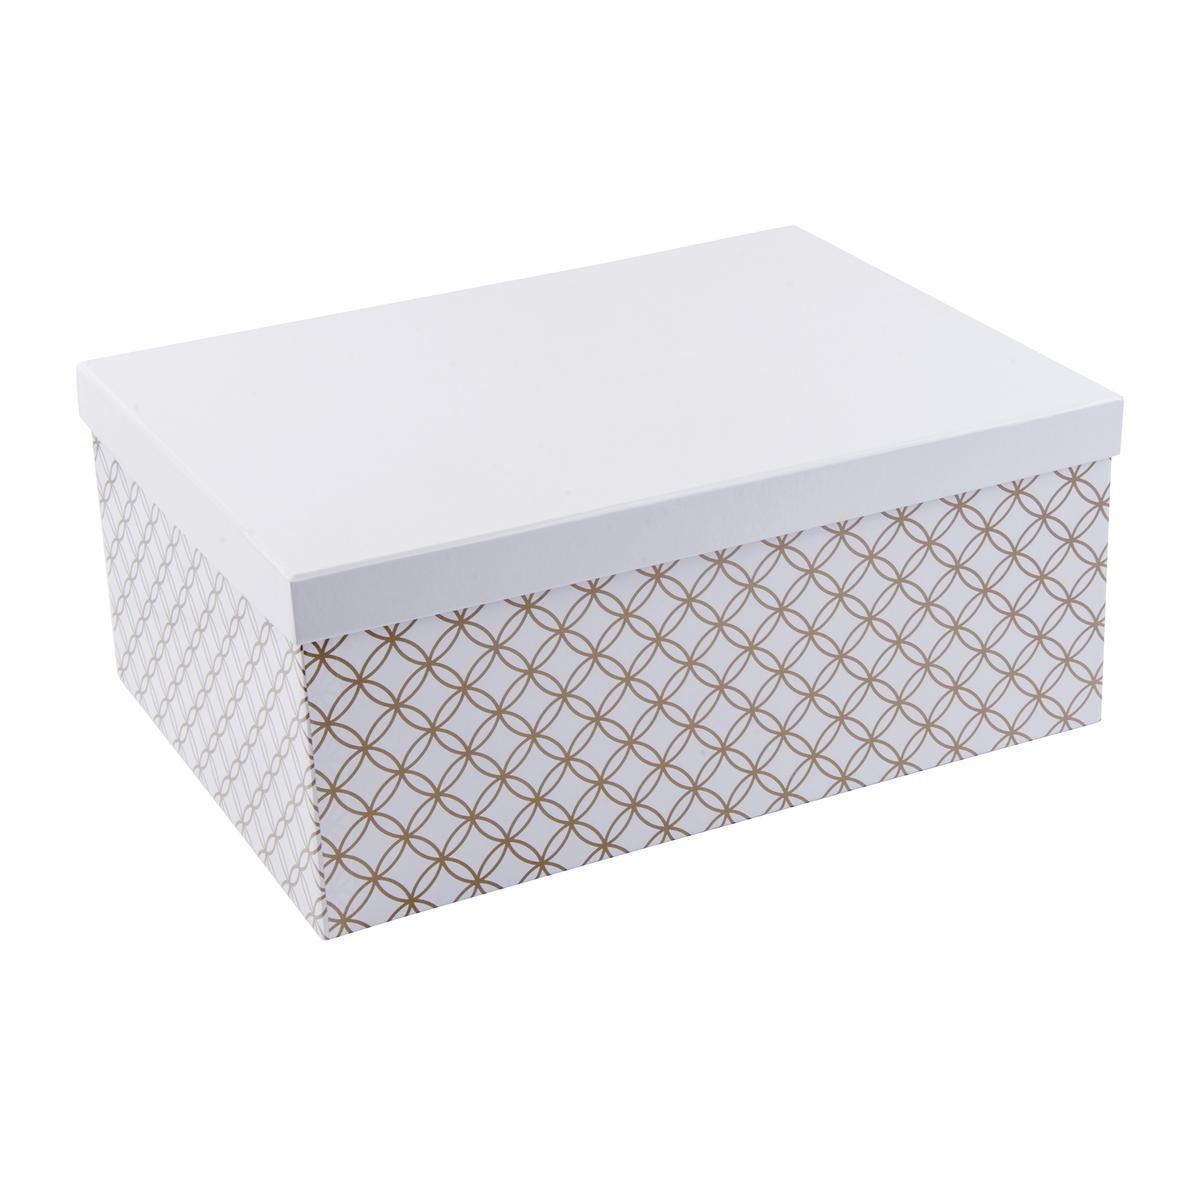 Boîte scandinave - Carton - 37 x 27,5 x H 15,5 cm - Blanc et doré